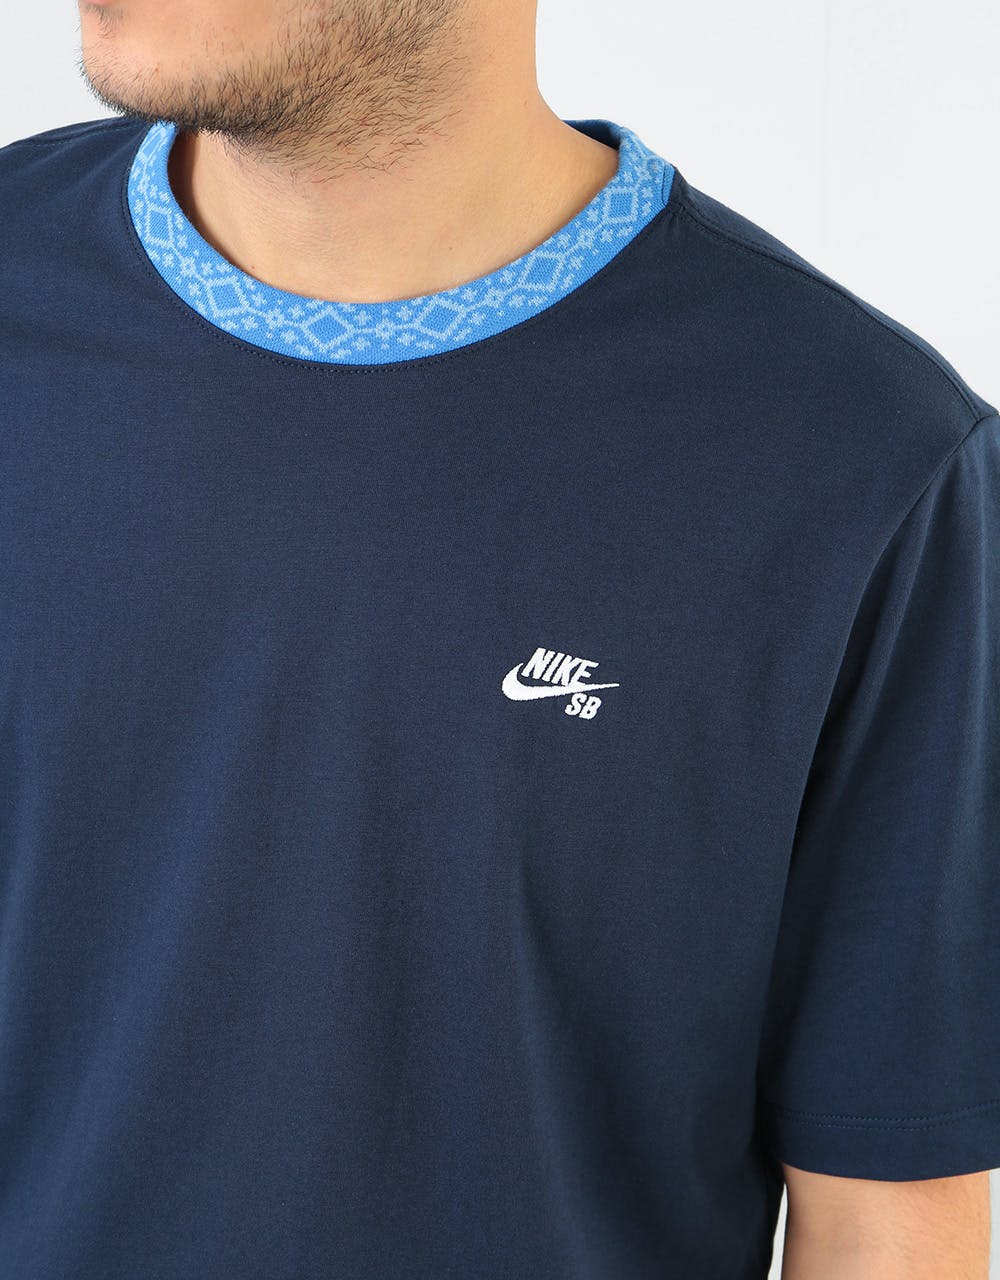 Nike SB Nordic Rib T-Shirt - Obsidian/Pacific Blue/White